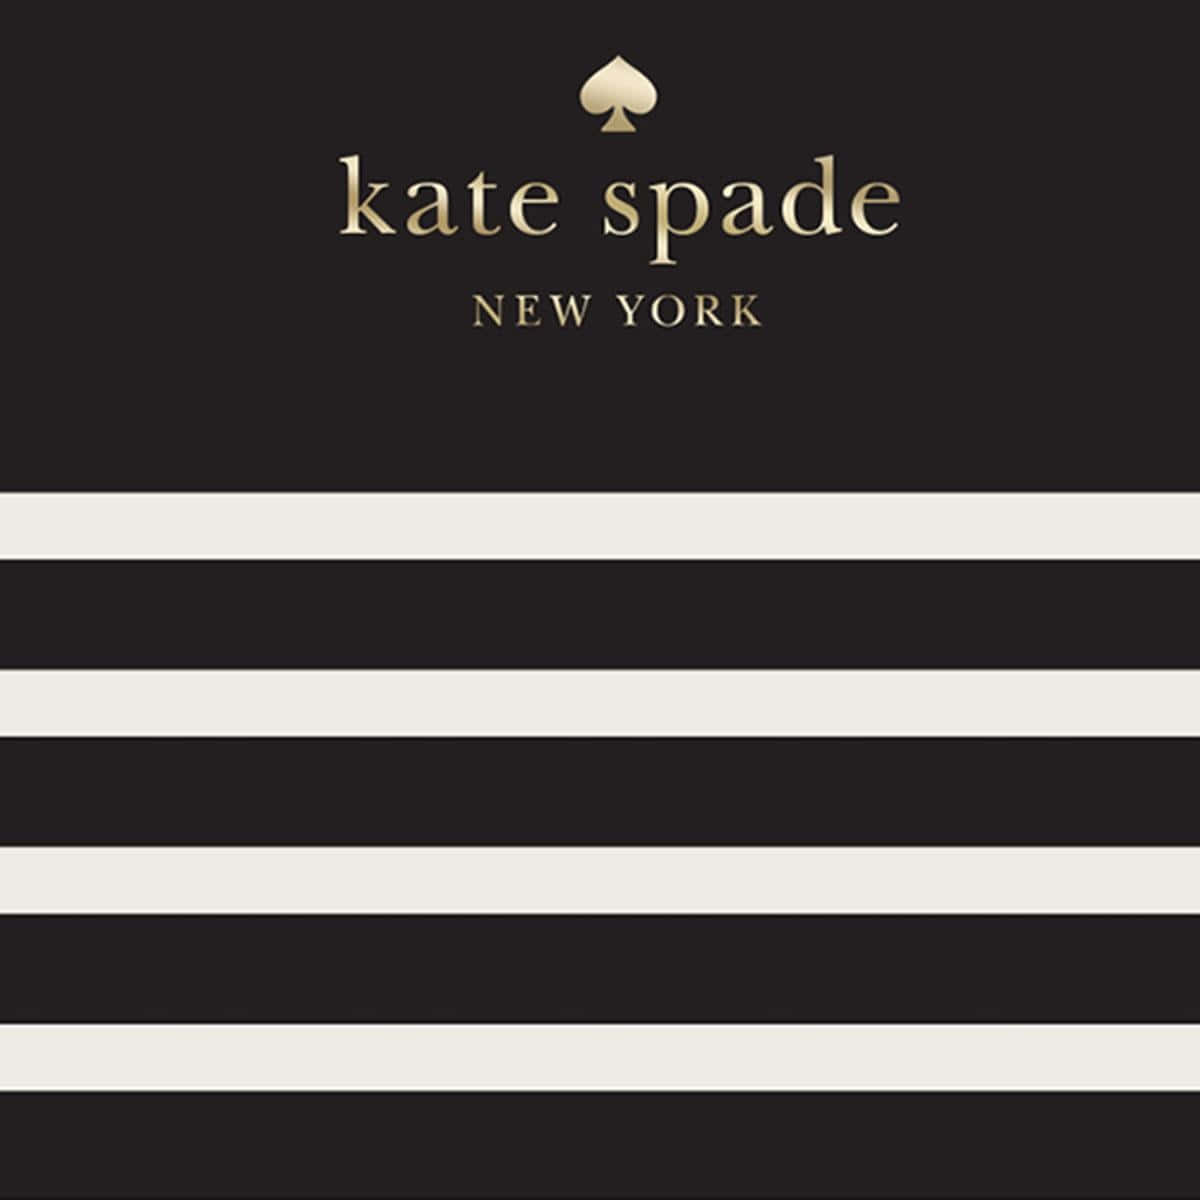 Rendiogni Giorno Un Po' Più Luminoso Con Kate Spade!